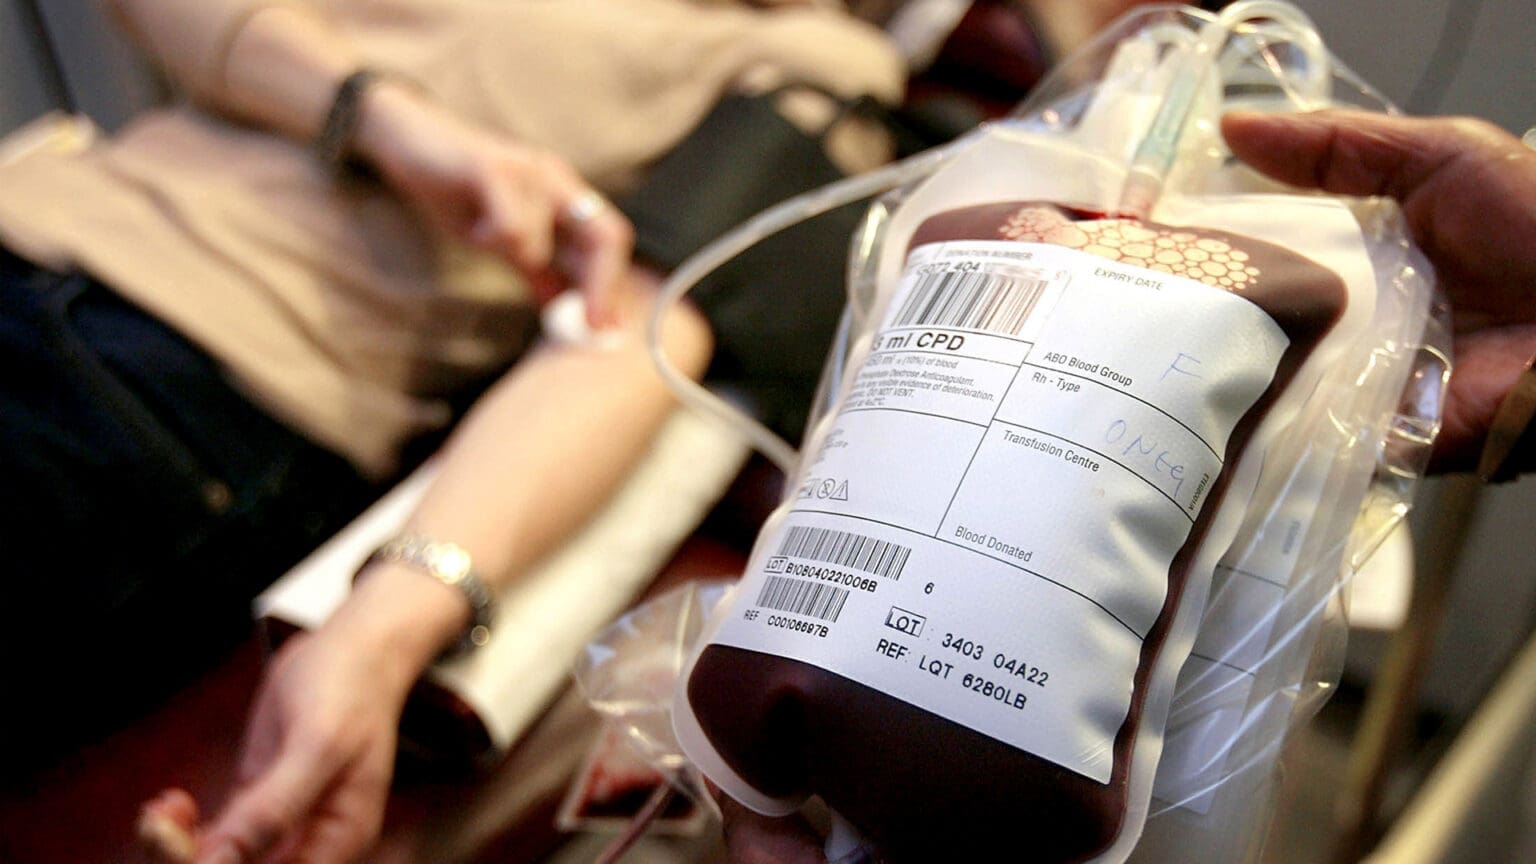 Colheita de Sangue no Pinhal Novo: Uma Iniciativa que Salva Vidas com o Apoio do Município de Palmela